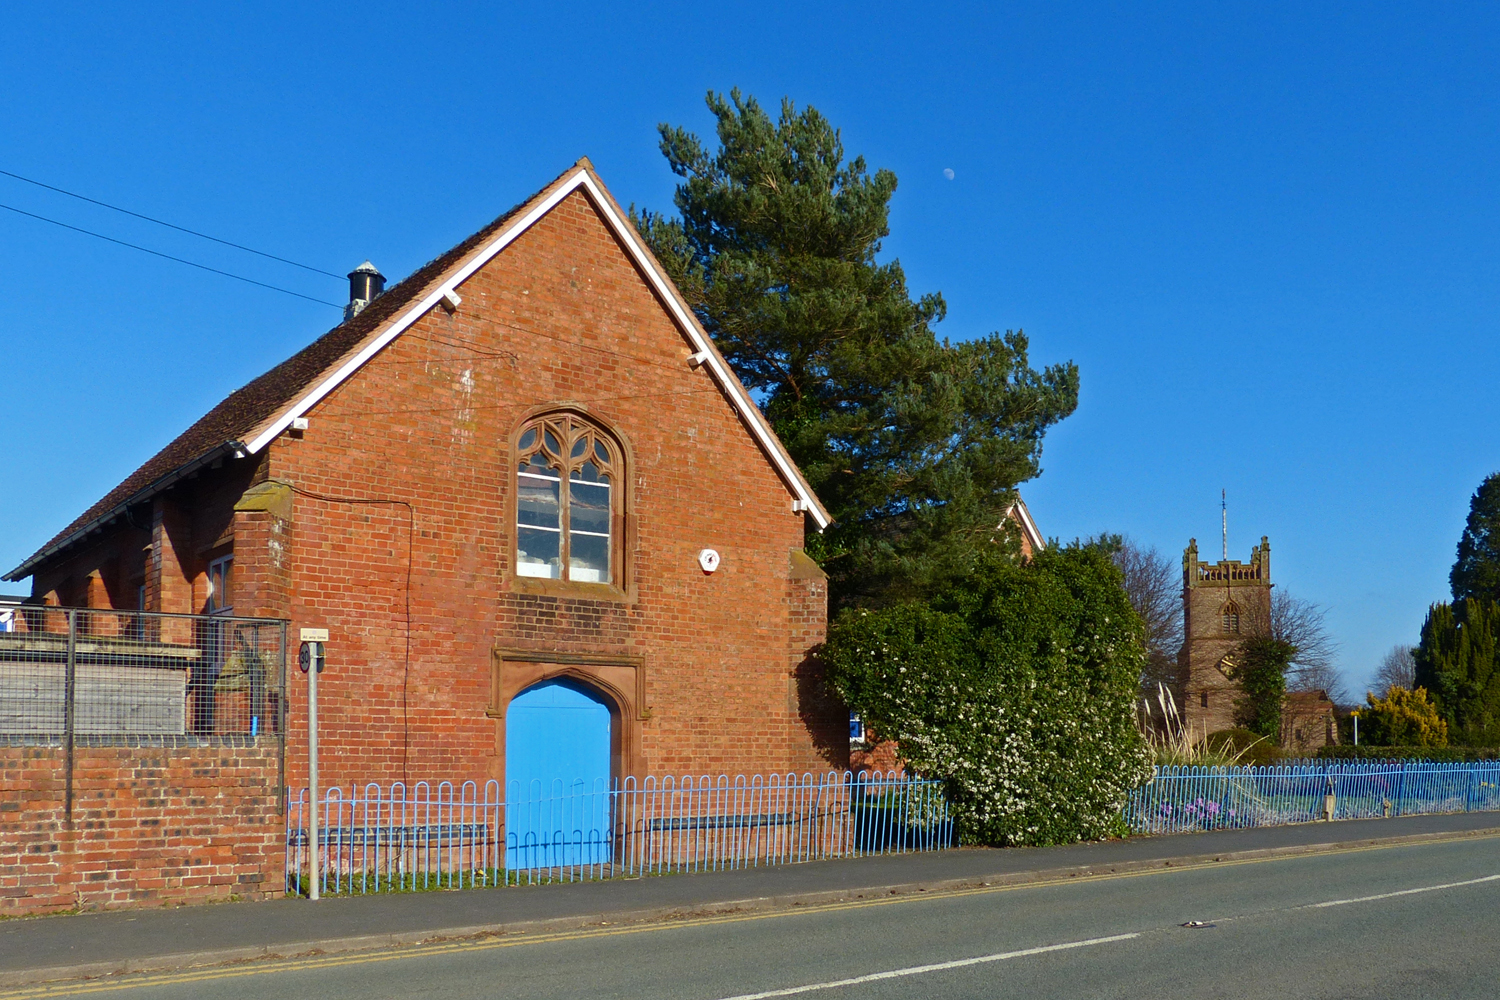 Broadheath Old Church March 2014